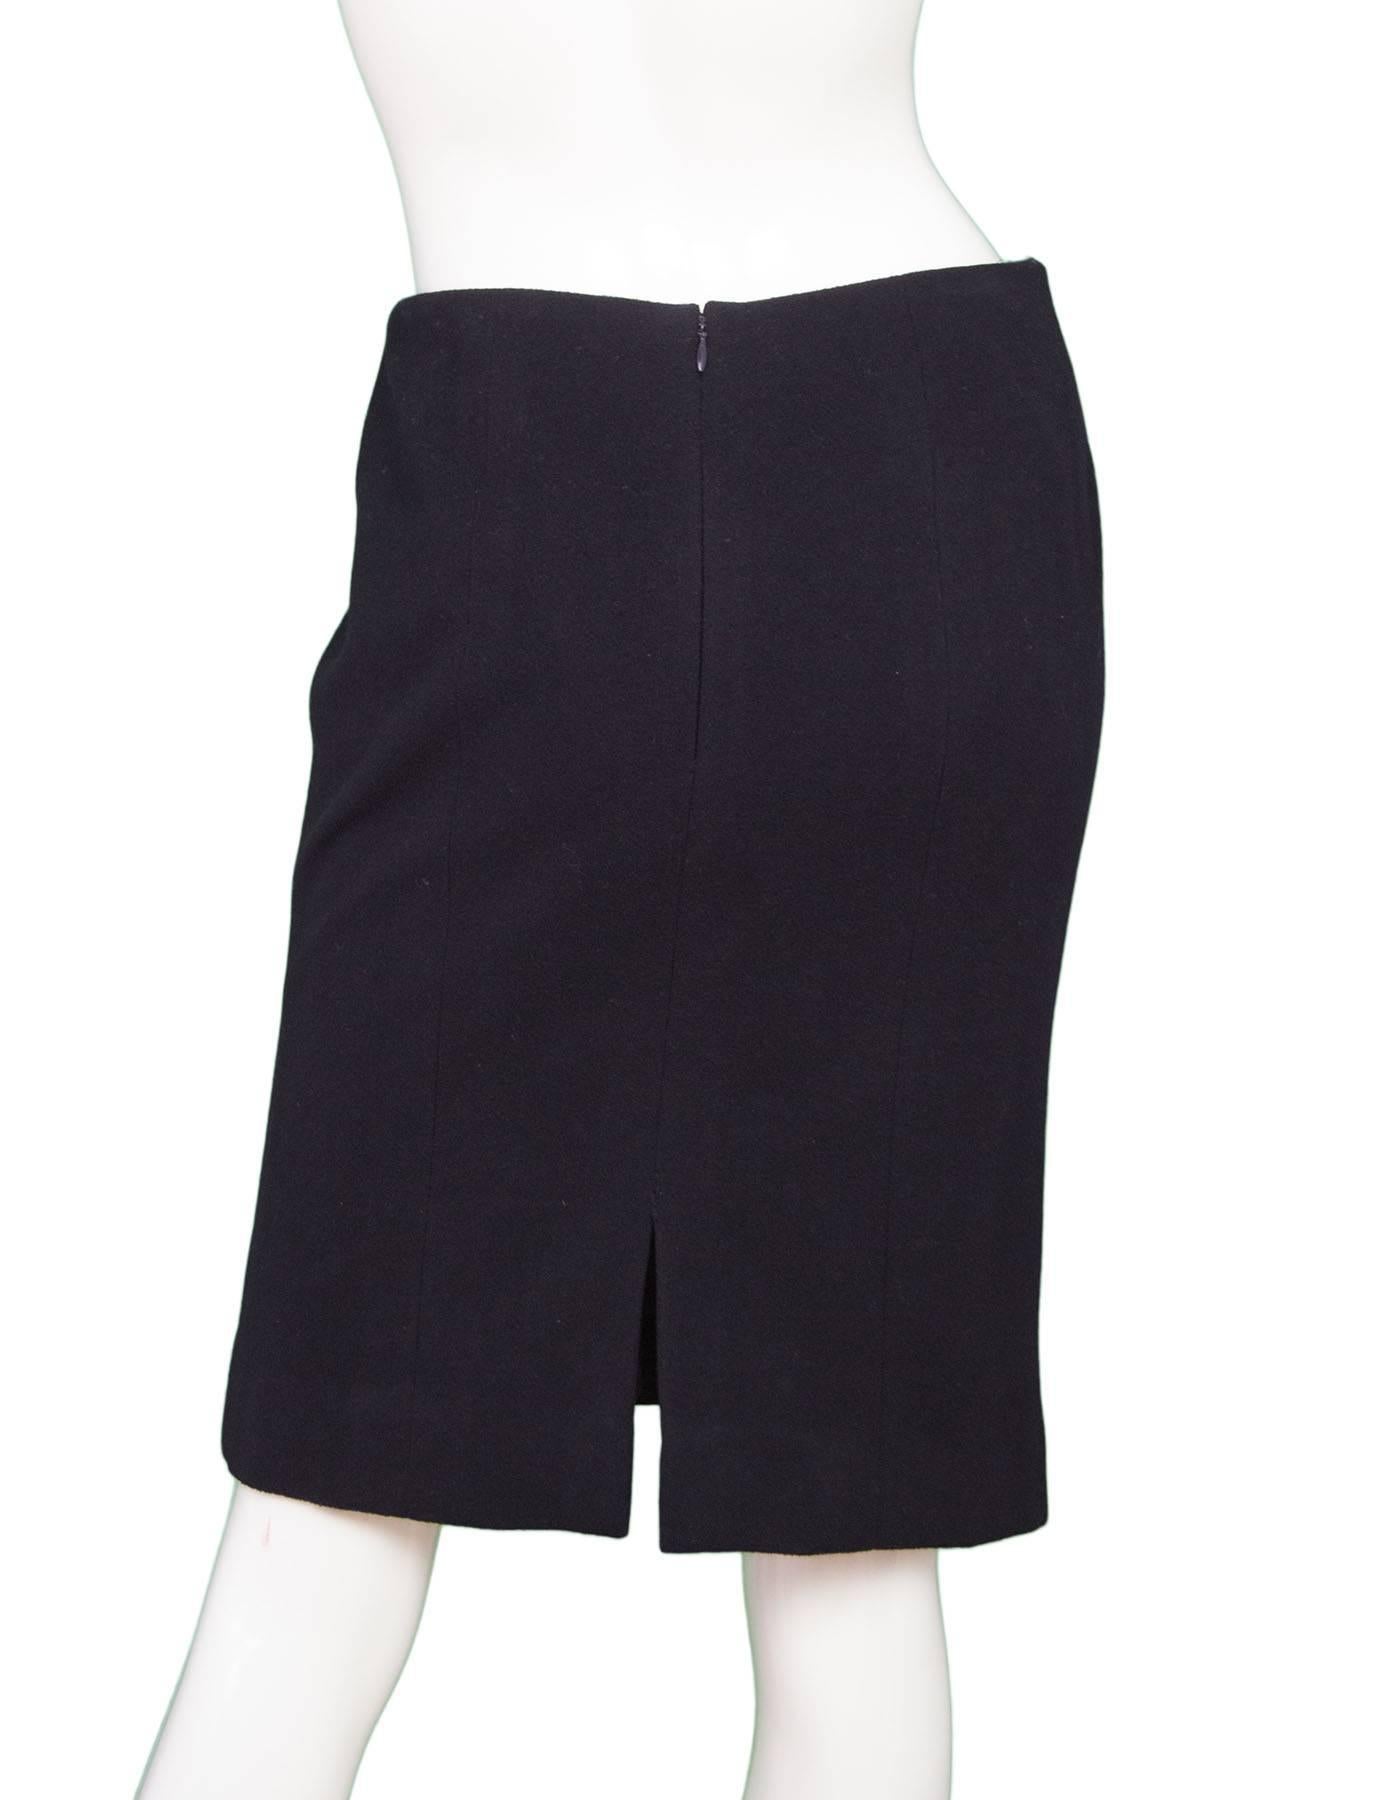 Women's Chanel Black Cashmere Pencil Skirt sz FR42